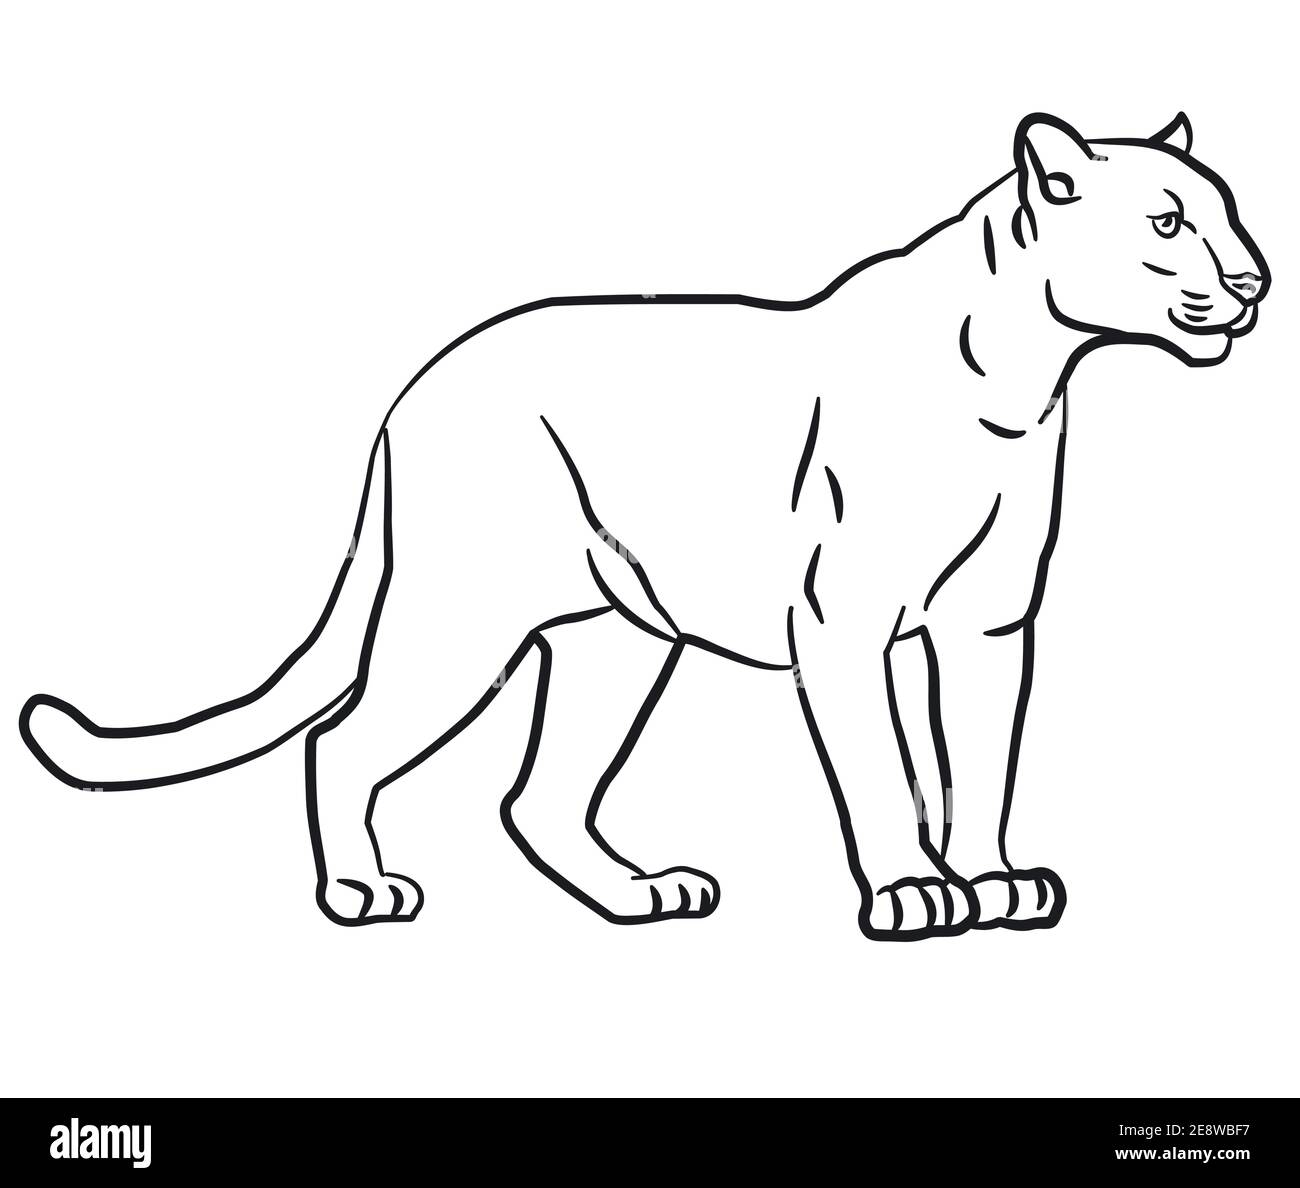 Kontur lineare Zeichnung Illustration des wilden puma Stock Vektor